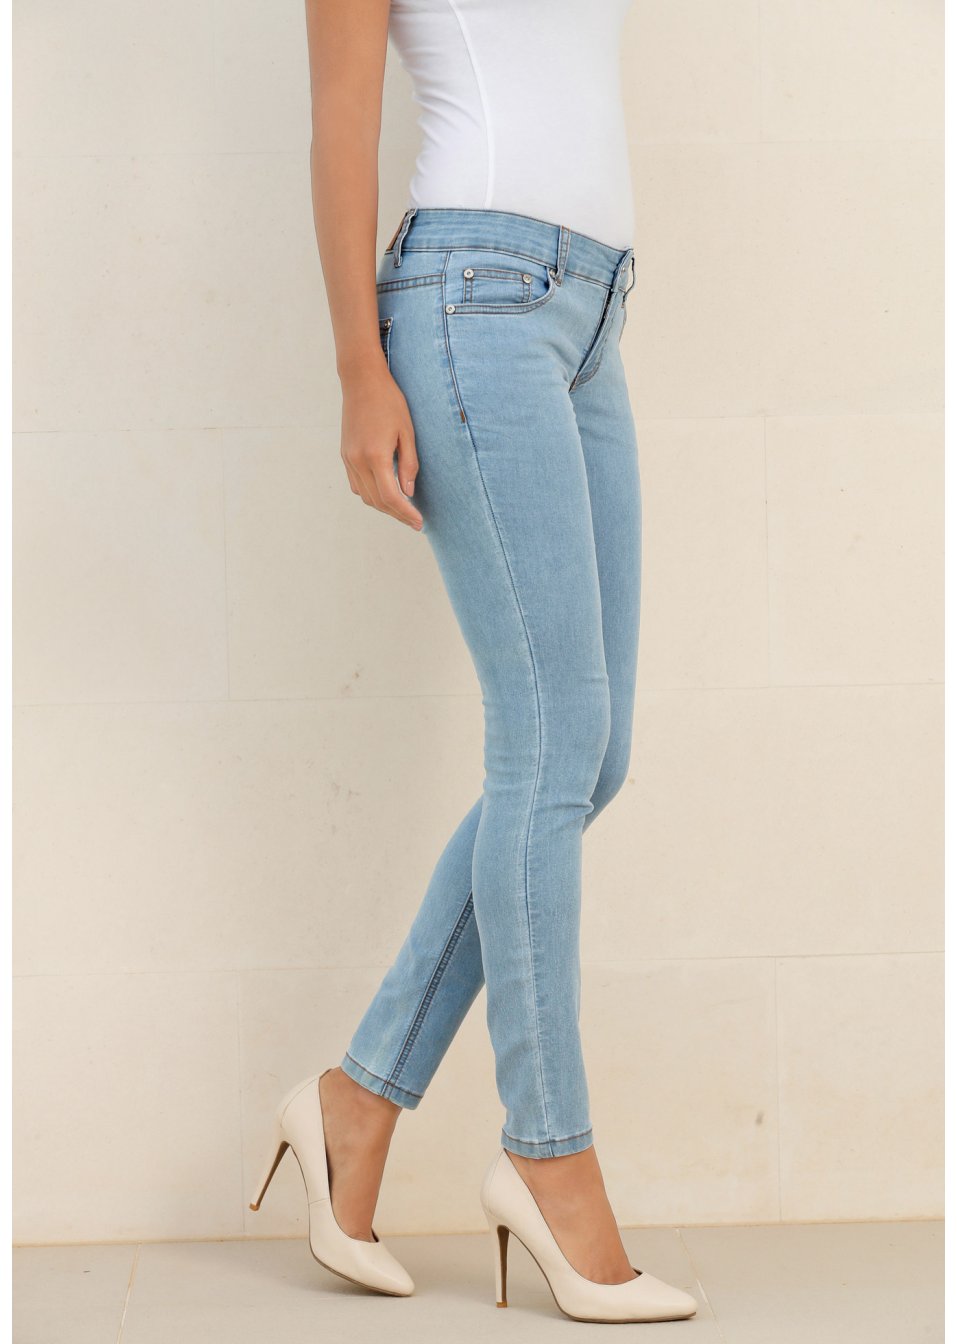 926935 Bonprix джинсы skinny синий выбеленный